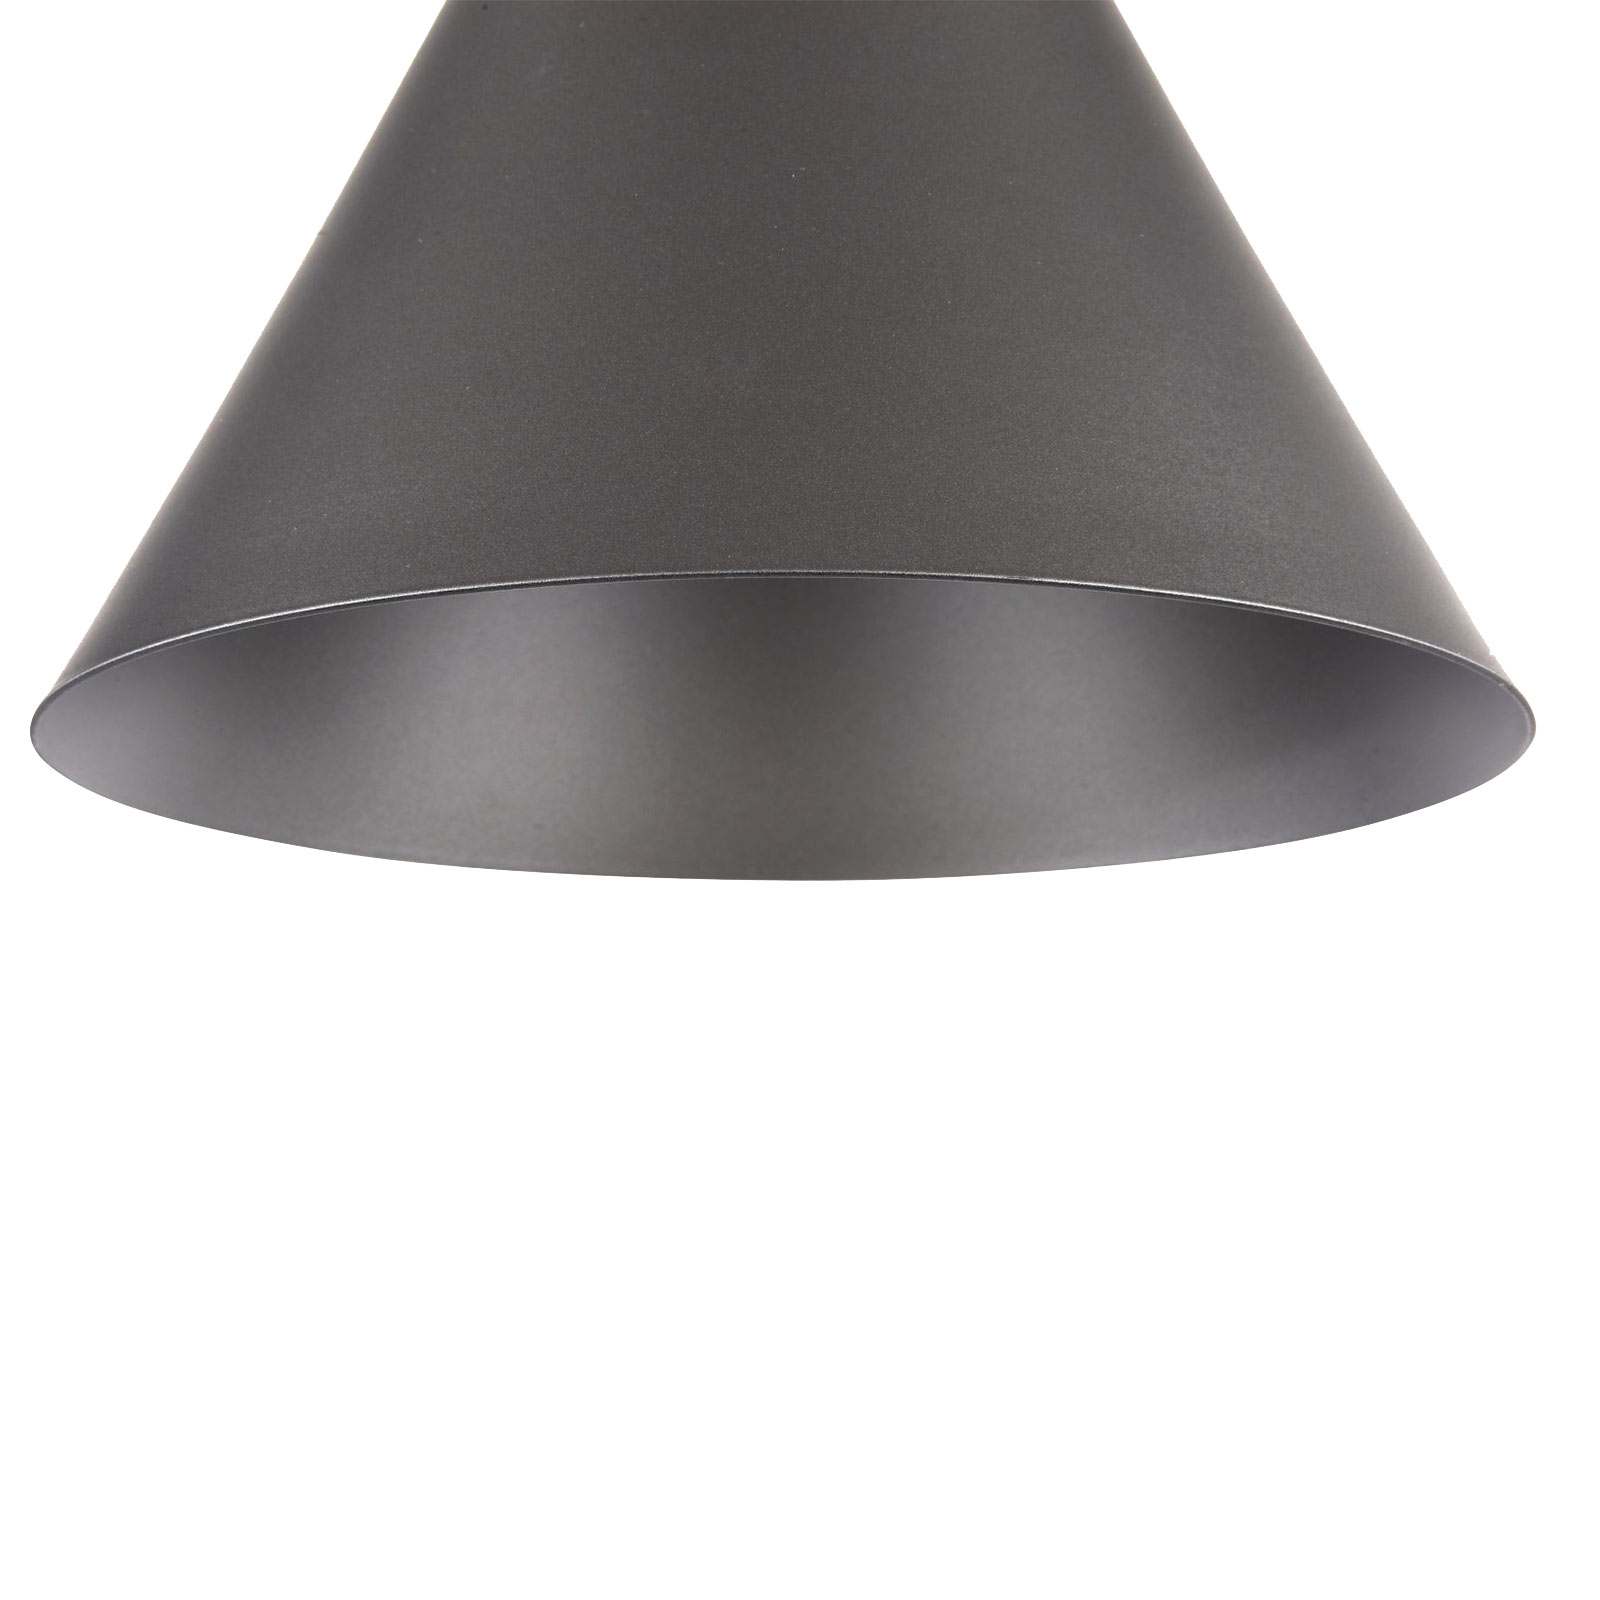 Závesná lampa Bicones v čiernej, Ø 22 cm